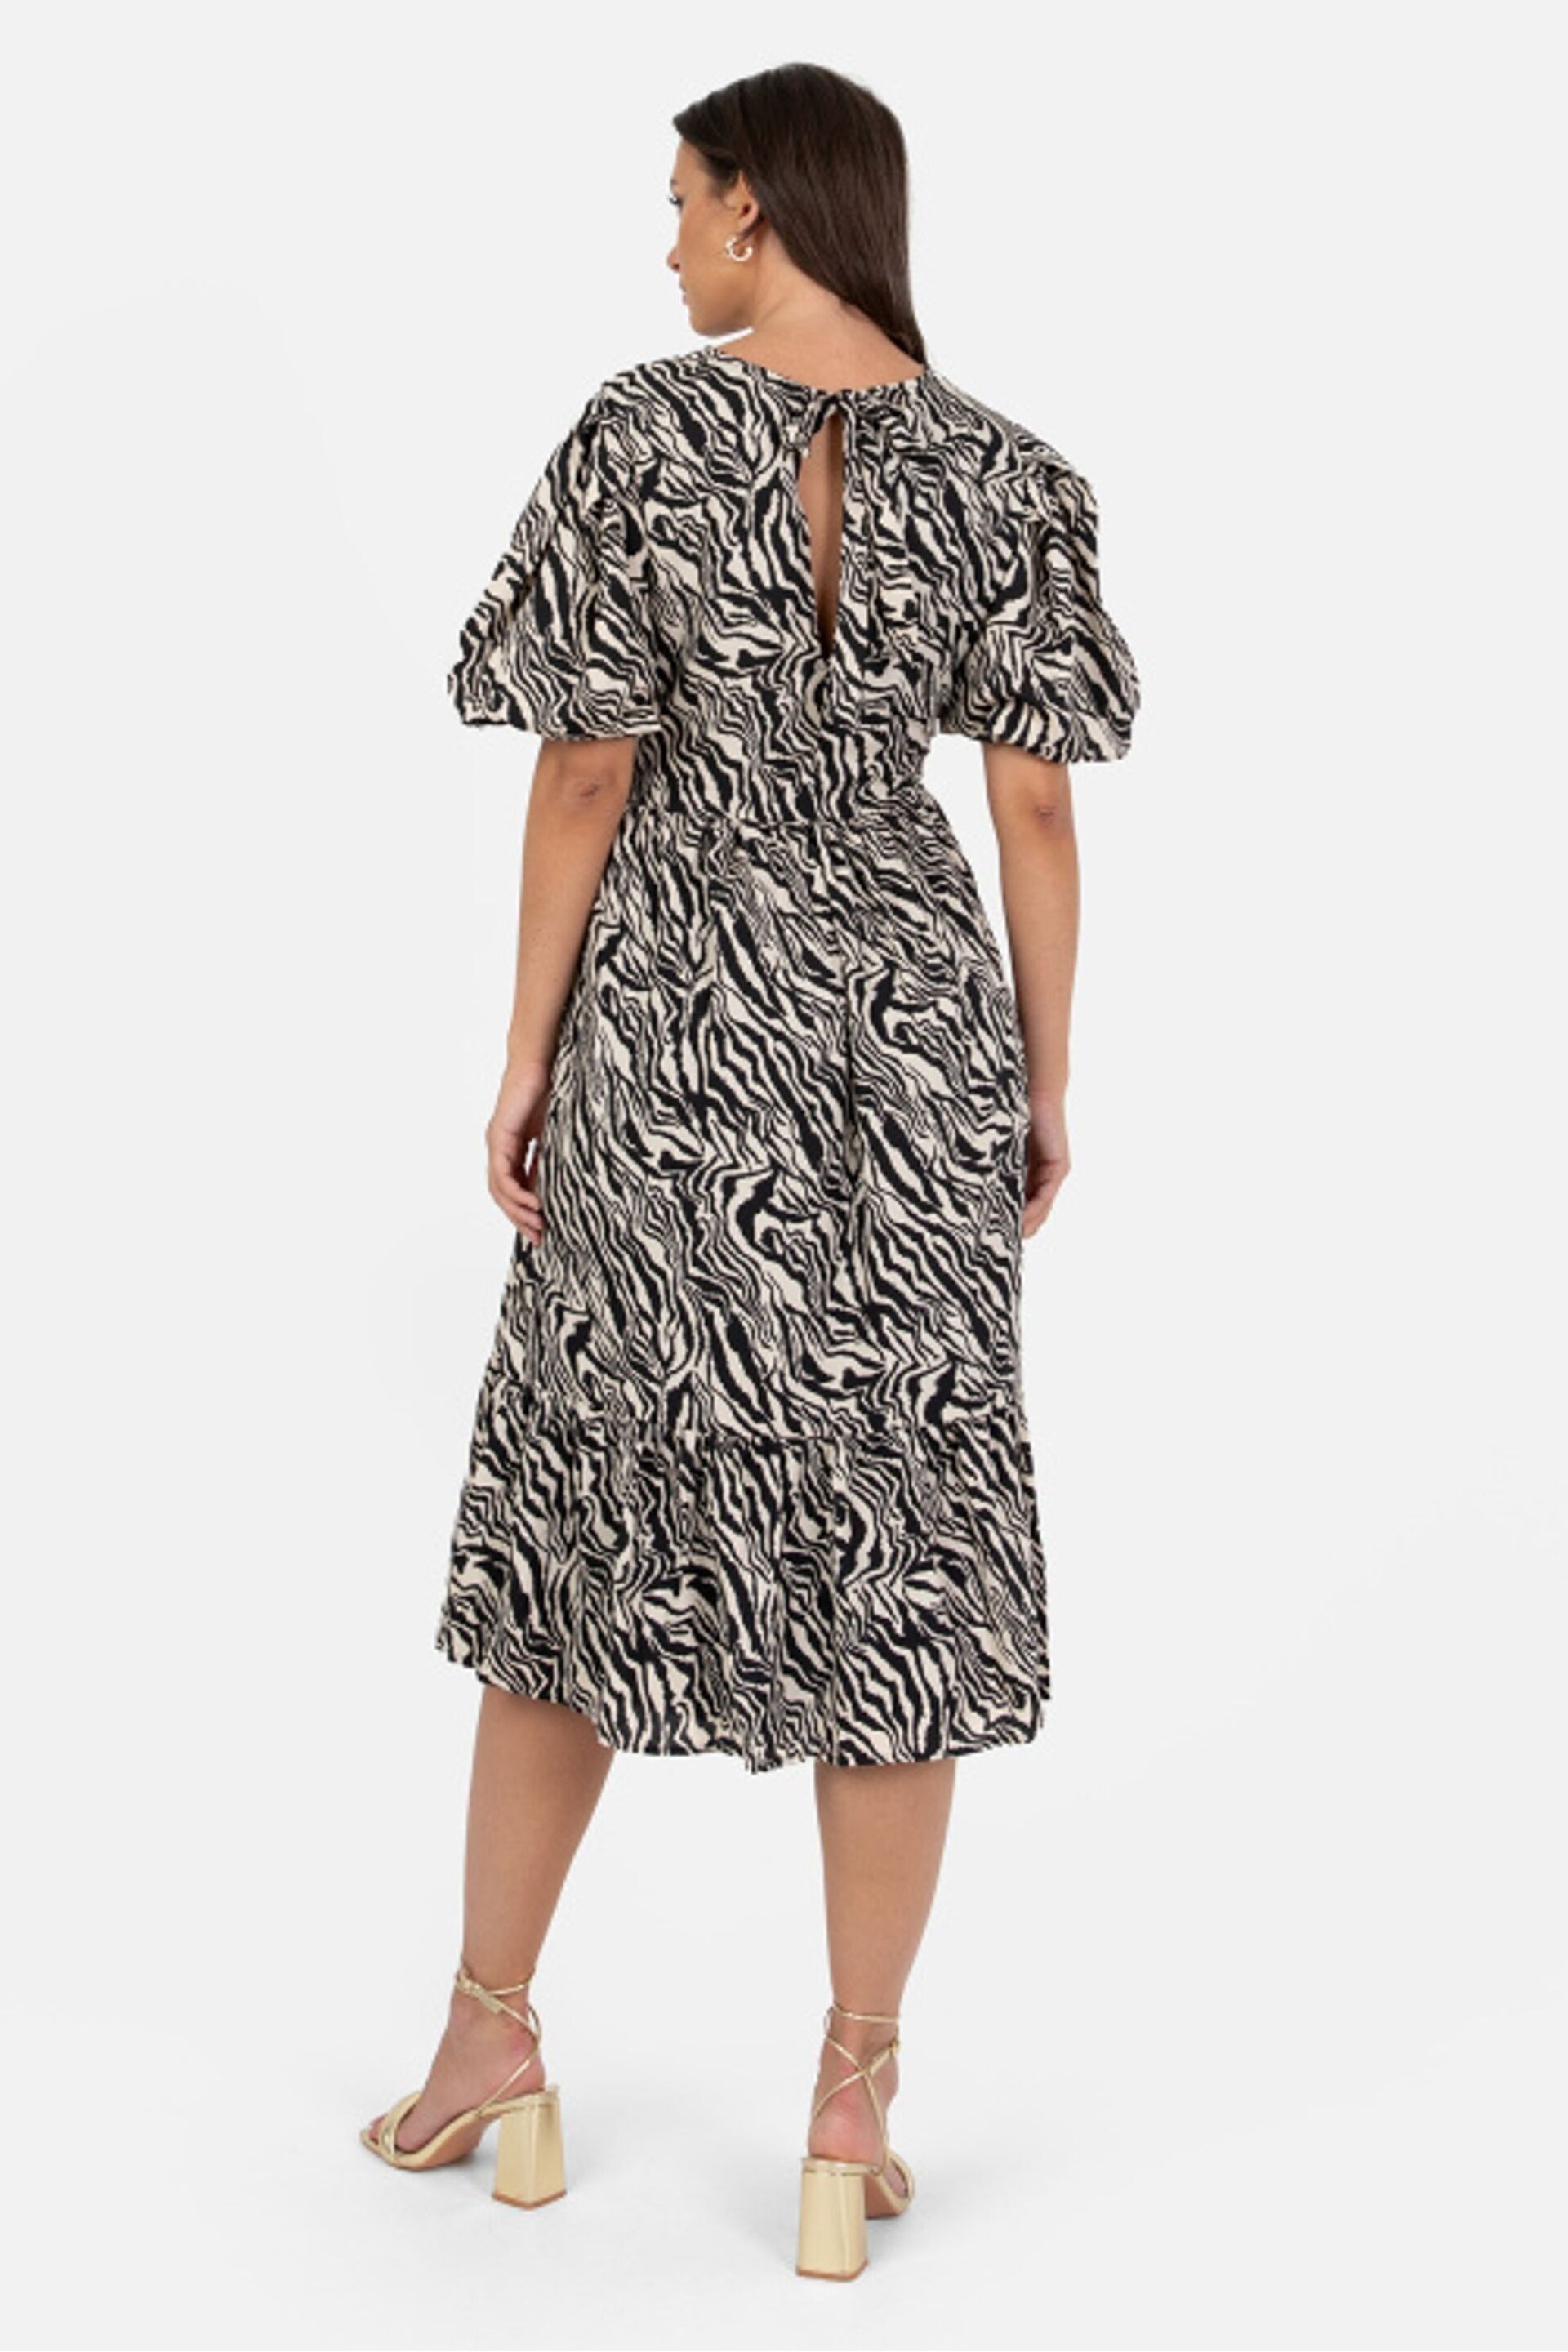 Lovedrobe Animal Print Puff Sleeve Midi Dress - Image 3 of 5